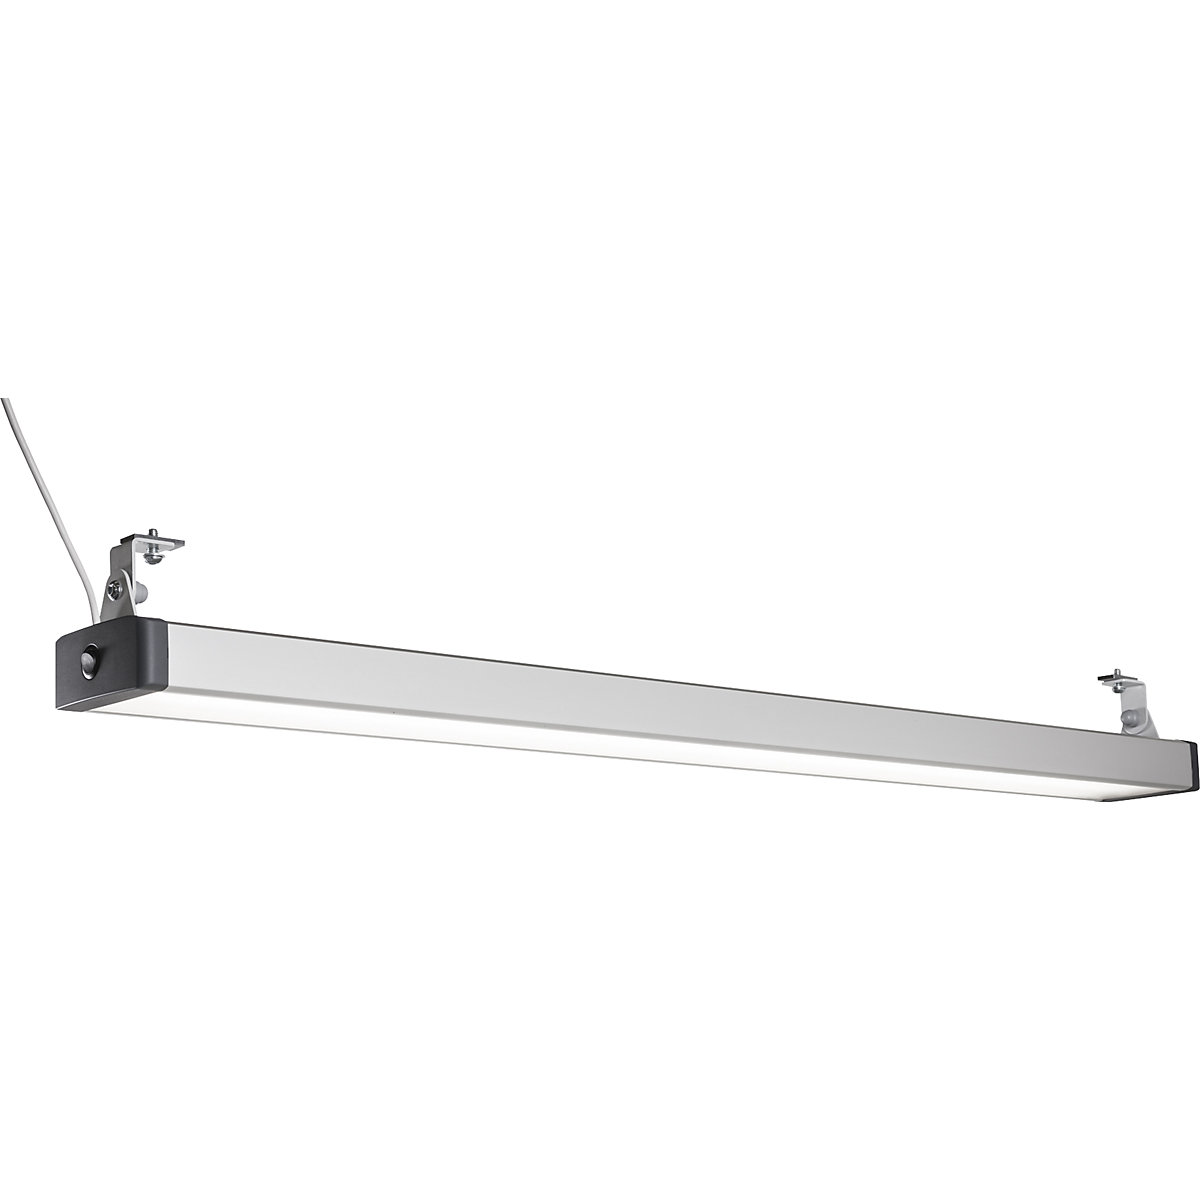 Lampă LED pentru spațiul de lucru – Treston, posibilitate de control prin aplicație sau telecomandă separată, 60 W